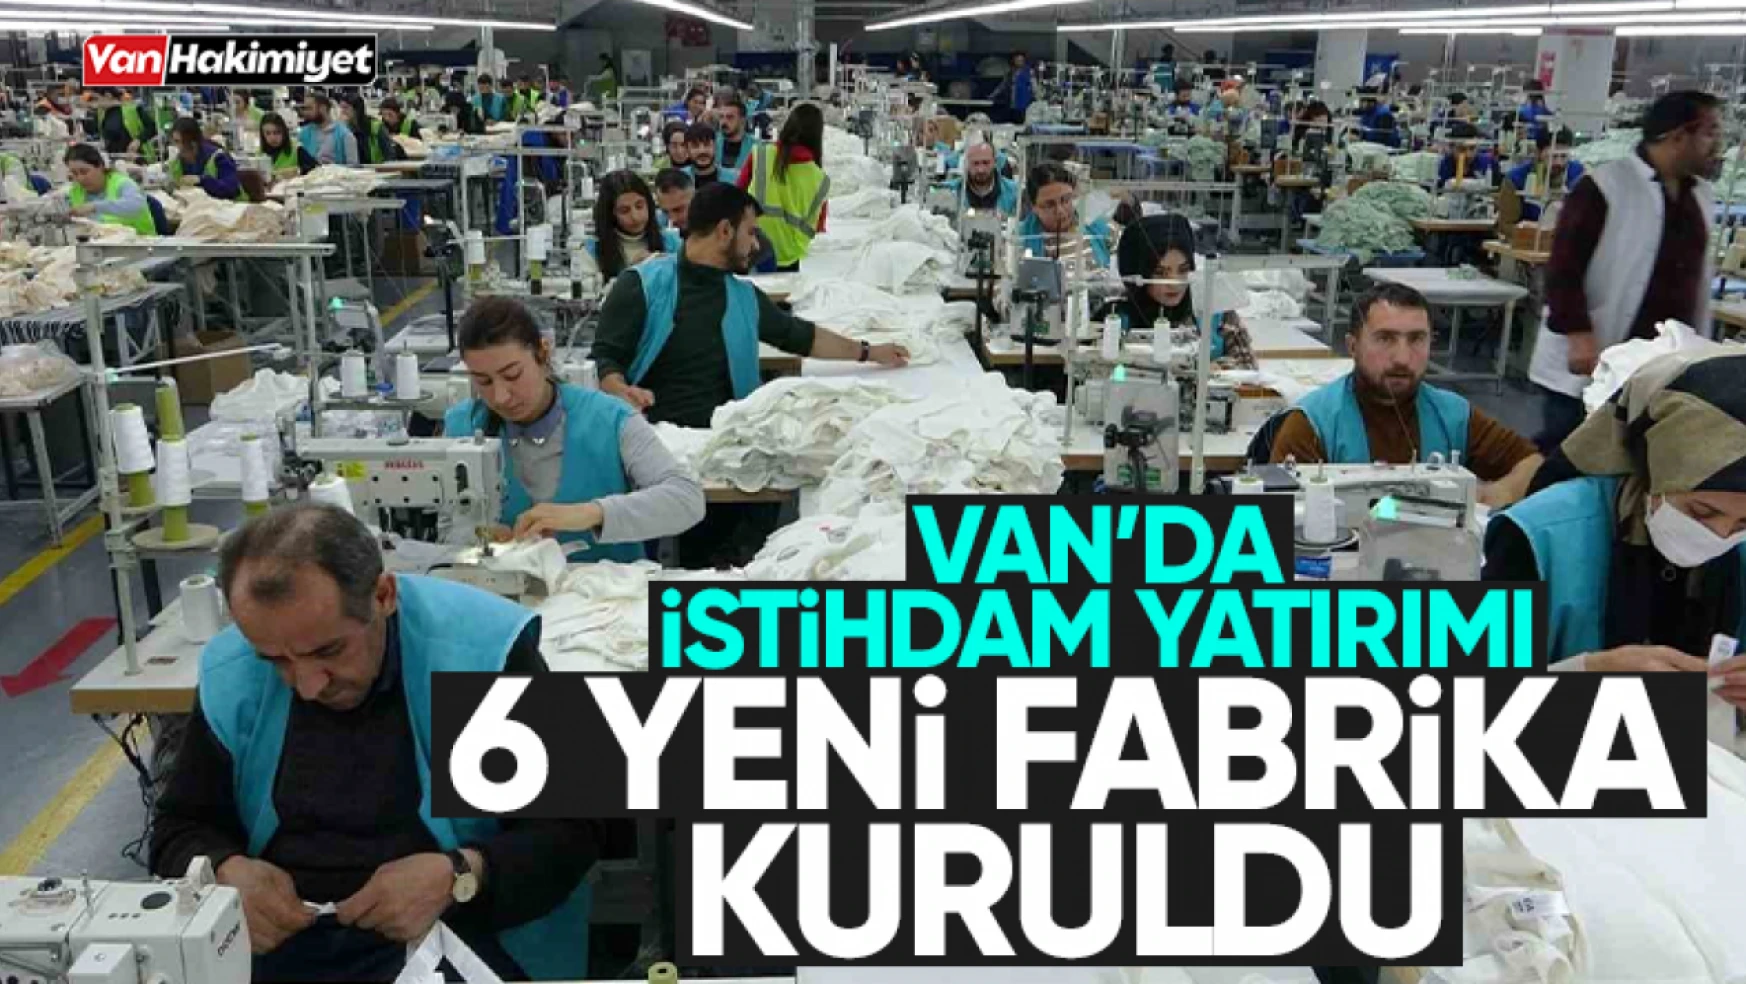 Van'da 6 yeni tekstil fabrikası kuruldu! 2 bin 750 kişi çalışacak